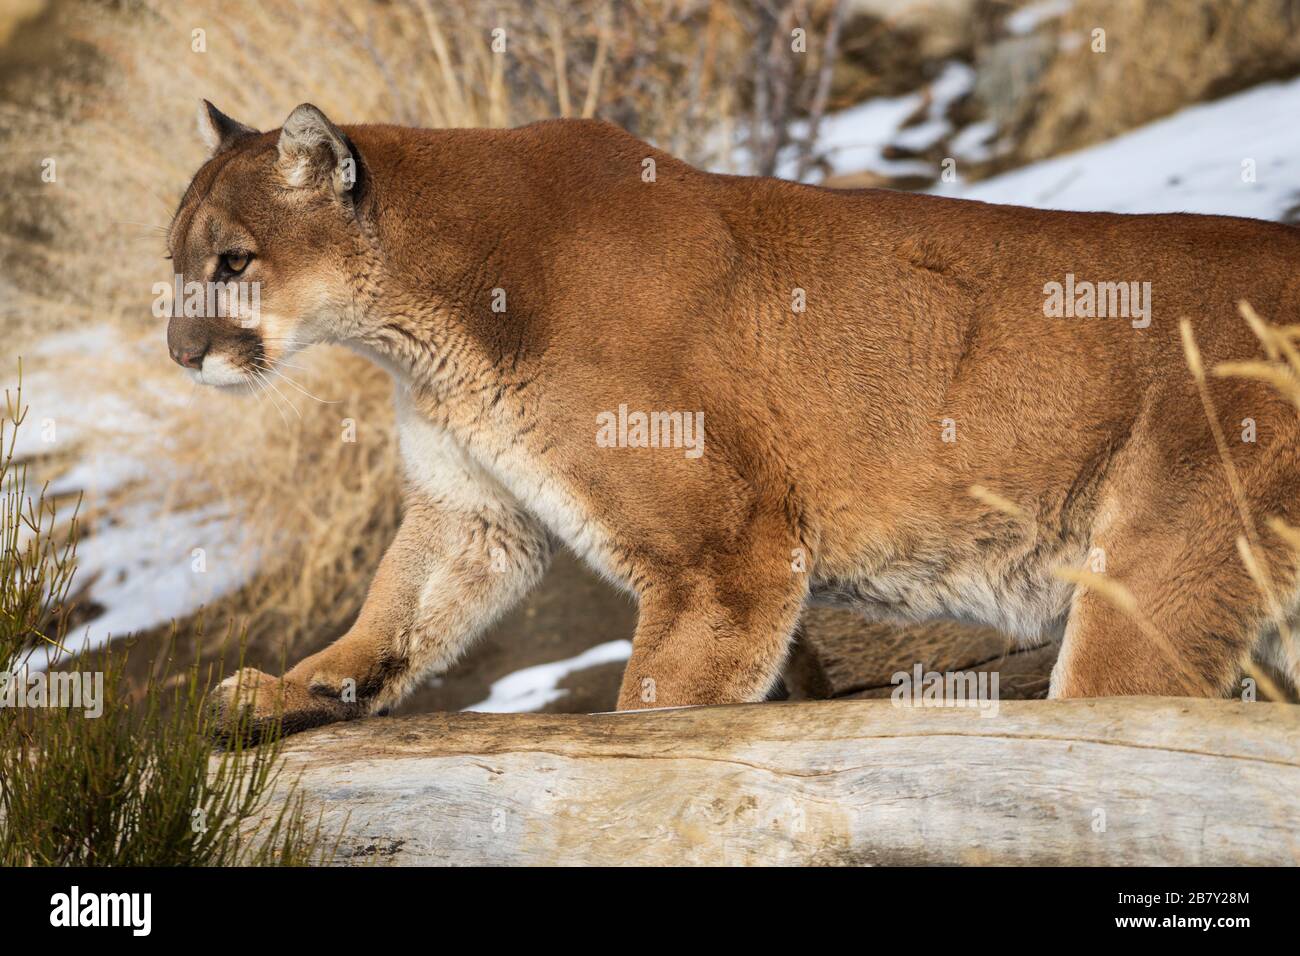 Daniel el león de montaña, también conocido como un puma o puma, era un cachorro rescatado que no puede volver a la naturaleza en Animal Ark en Reno, Nevada, Norteamérica Foto de stock